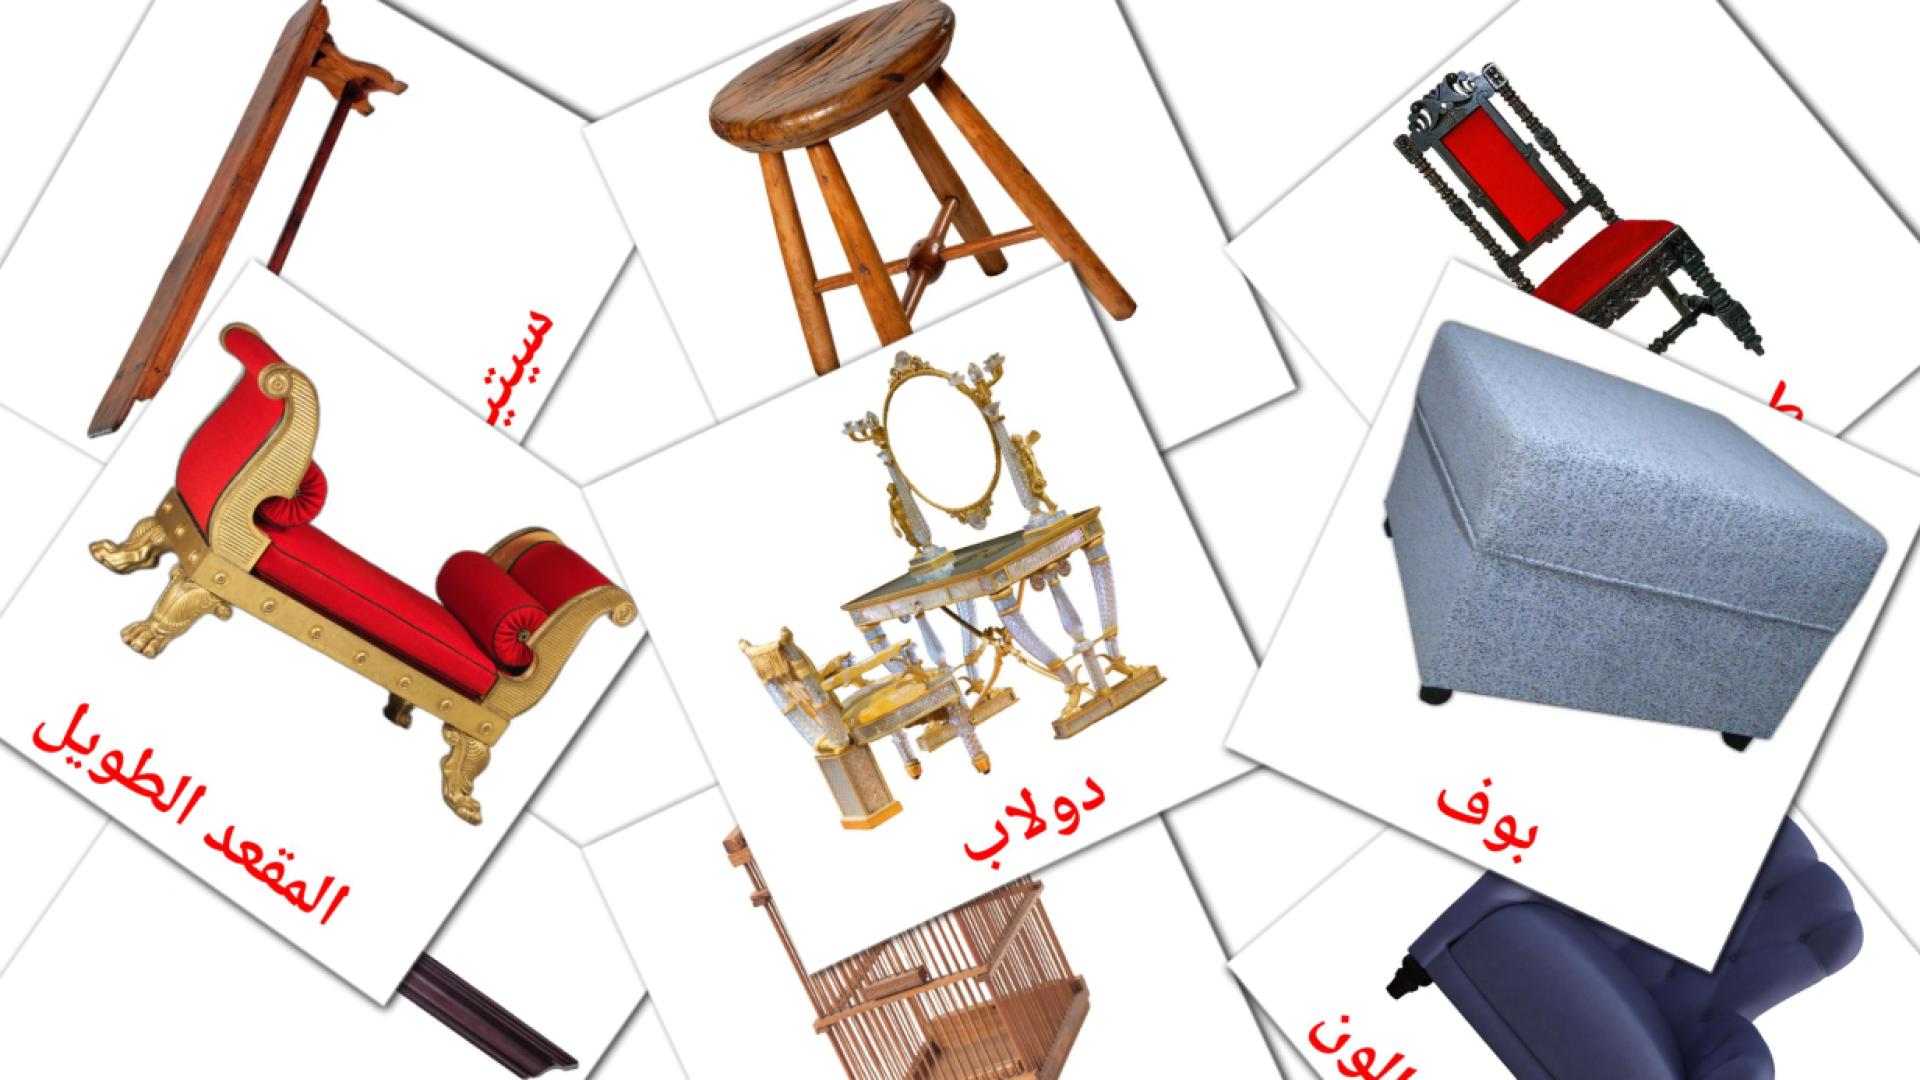 Muebles - tarjetas de vocabulario en árabe